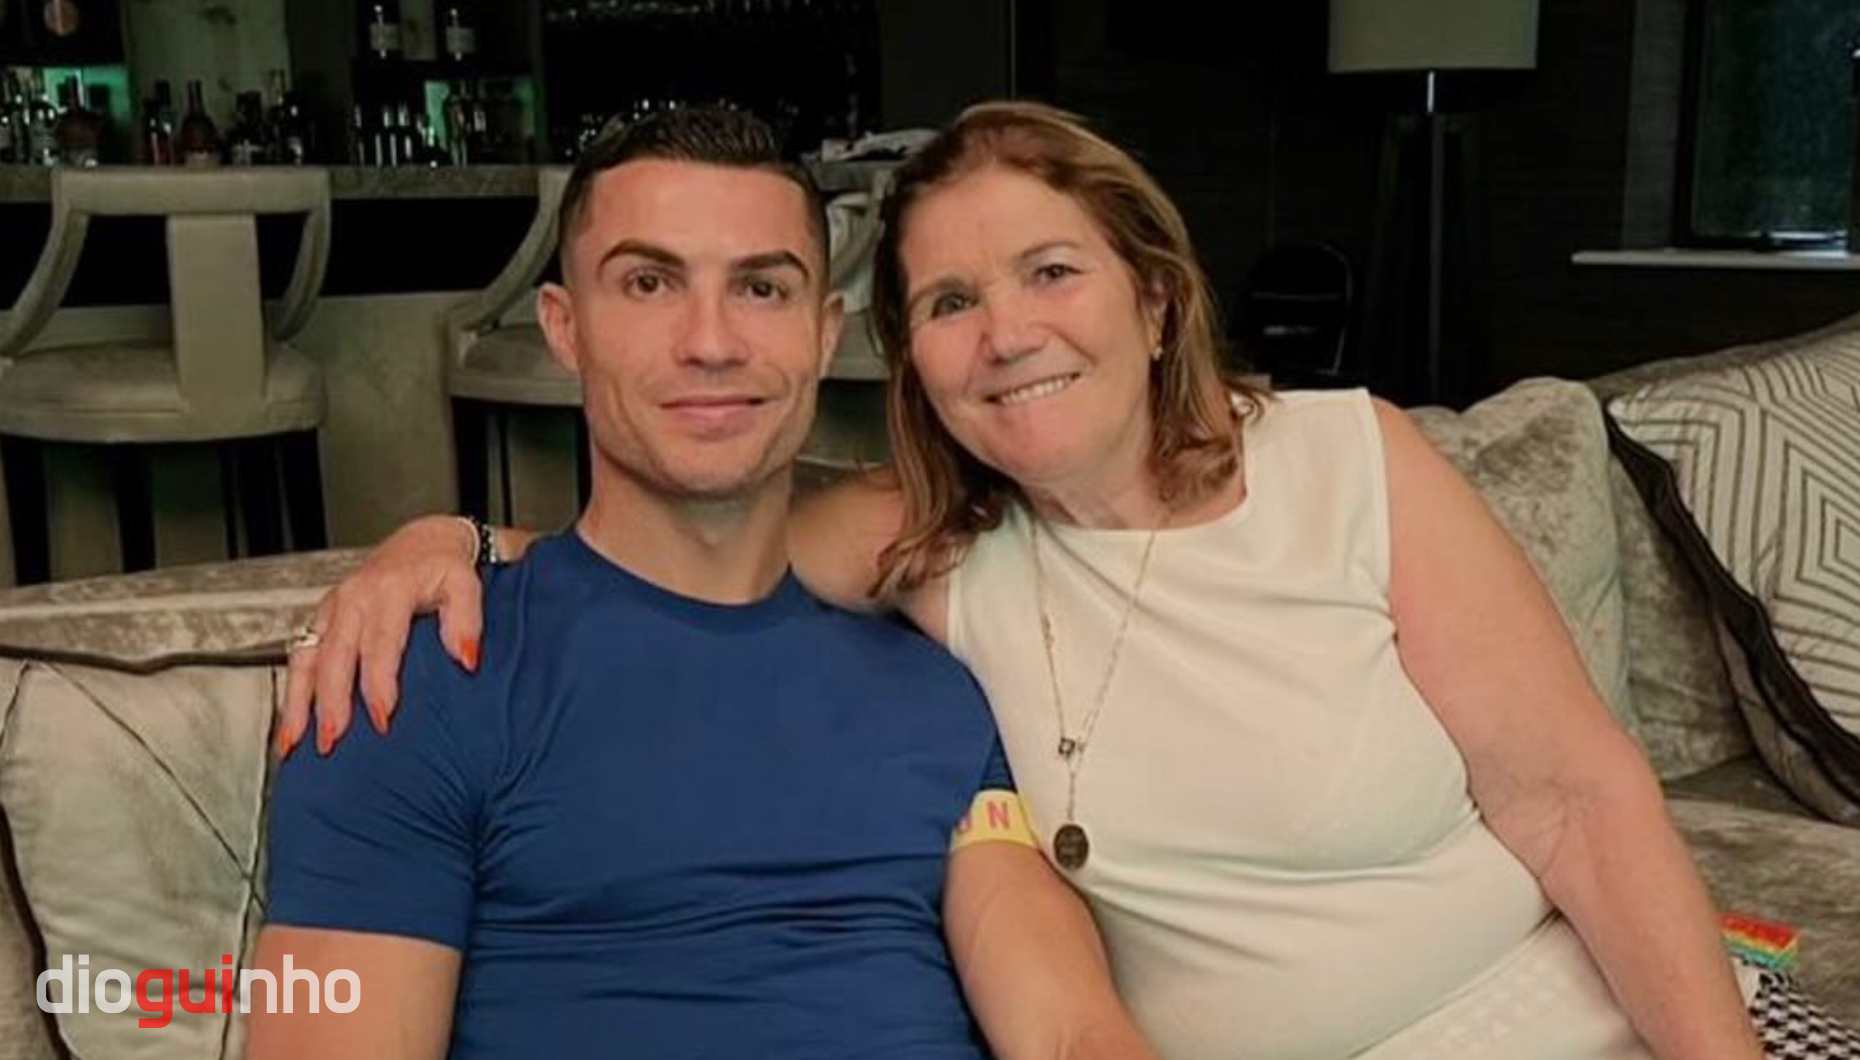 Mãe de Cristiano Ronaldo - Dolores Aveiro deixa mensagem ao seu 'casula' que festeja aniversário